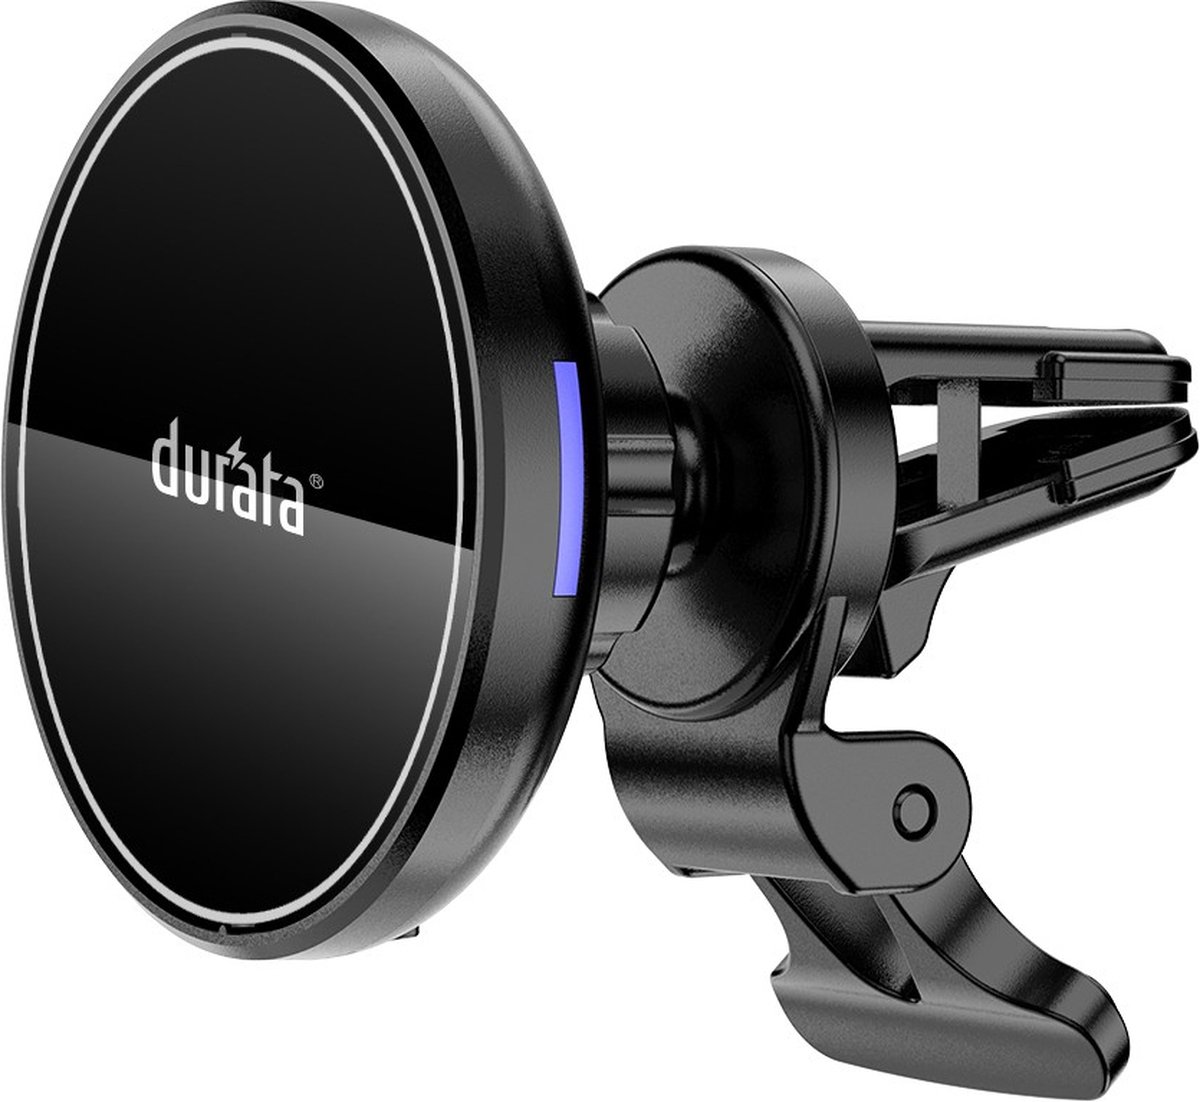 Durata magneet houder draadloos oplader - zwart - draadloos - iphone - samsung